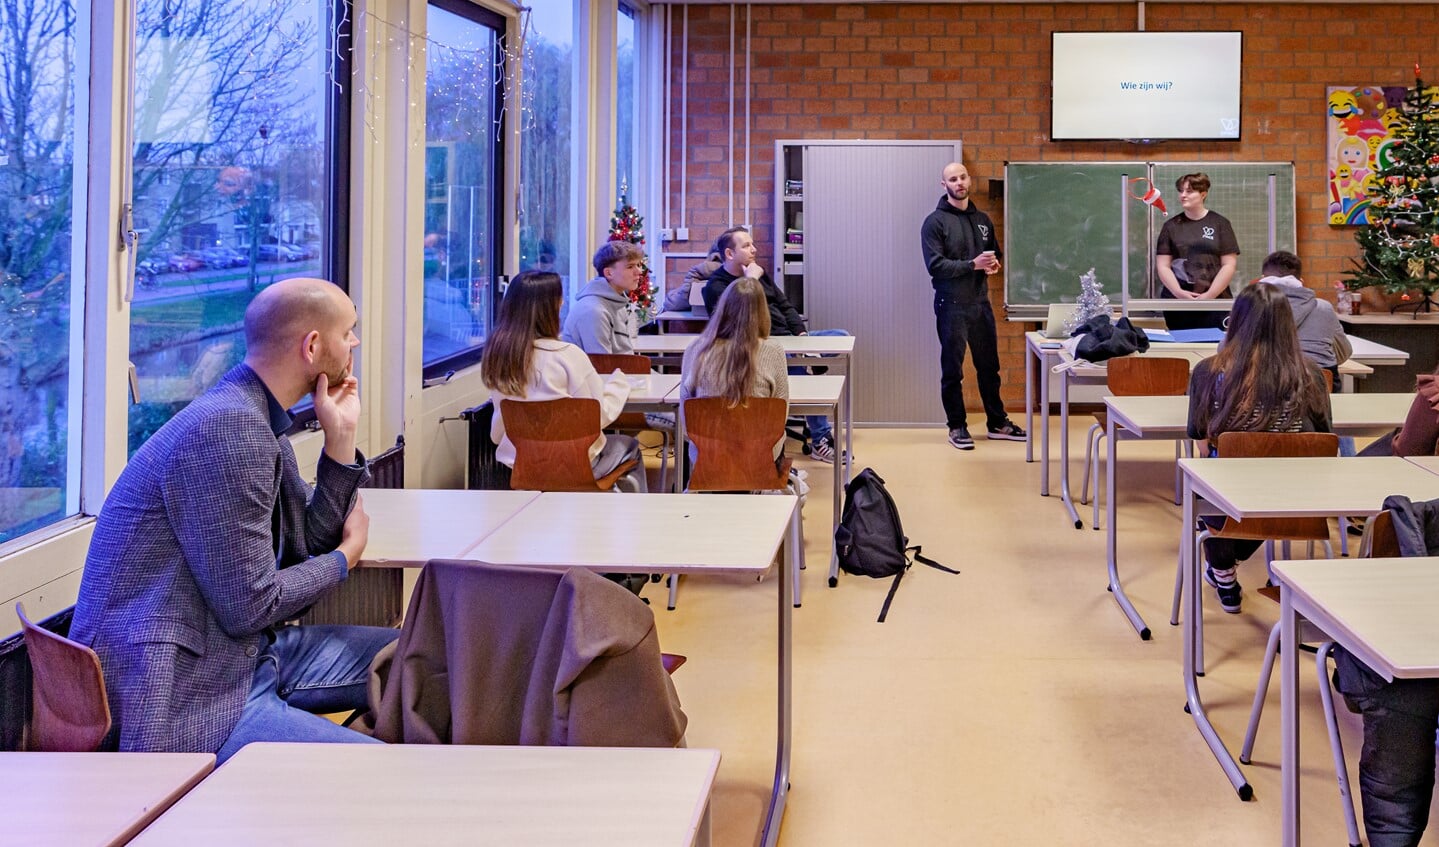 De Wethouder luisterde aandachtig naar de gastles op zijn oude school. (Foto: Foto-OK.nl)